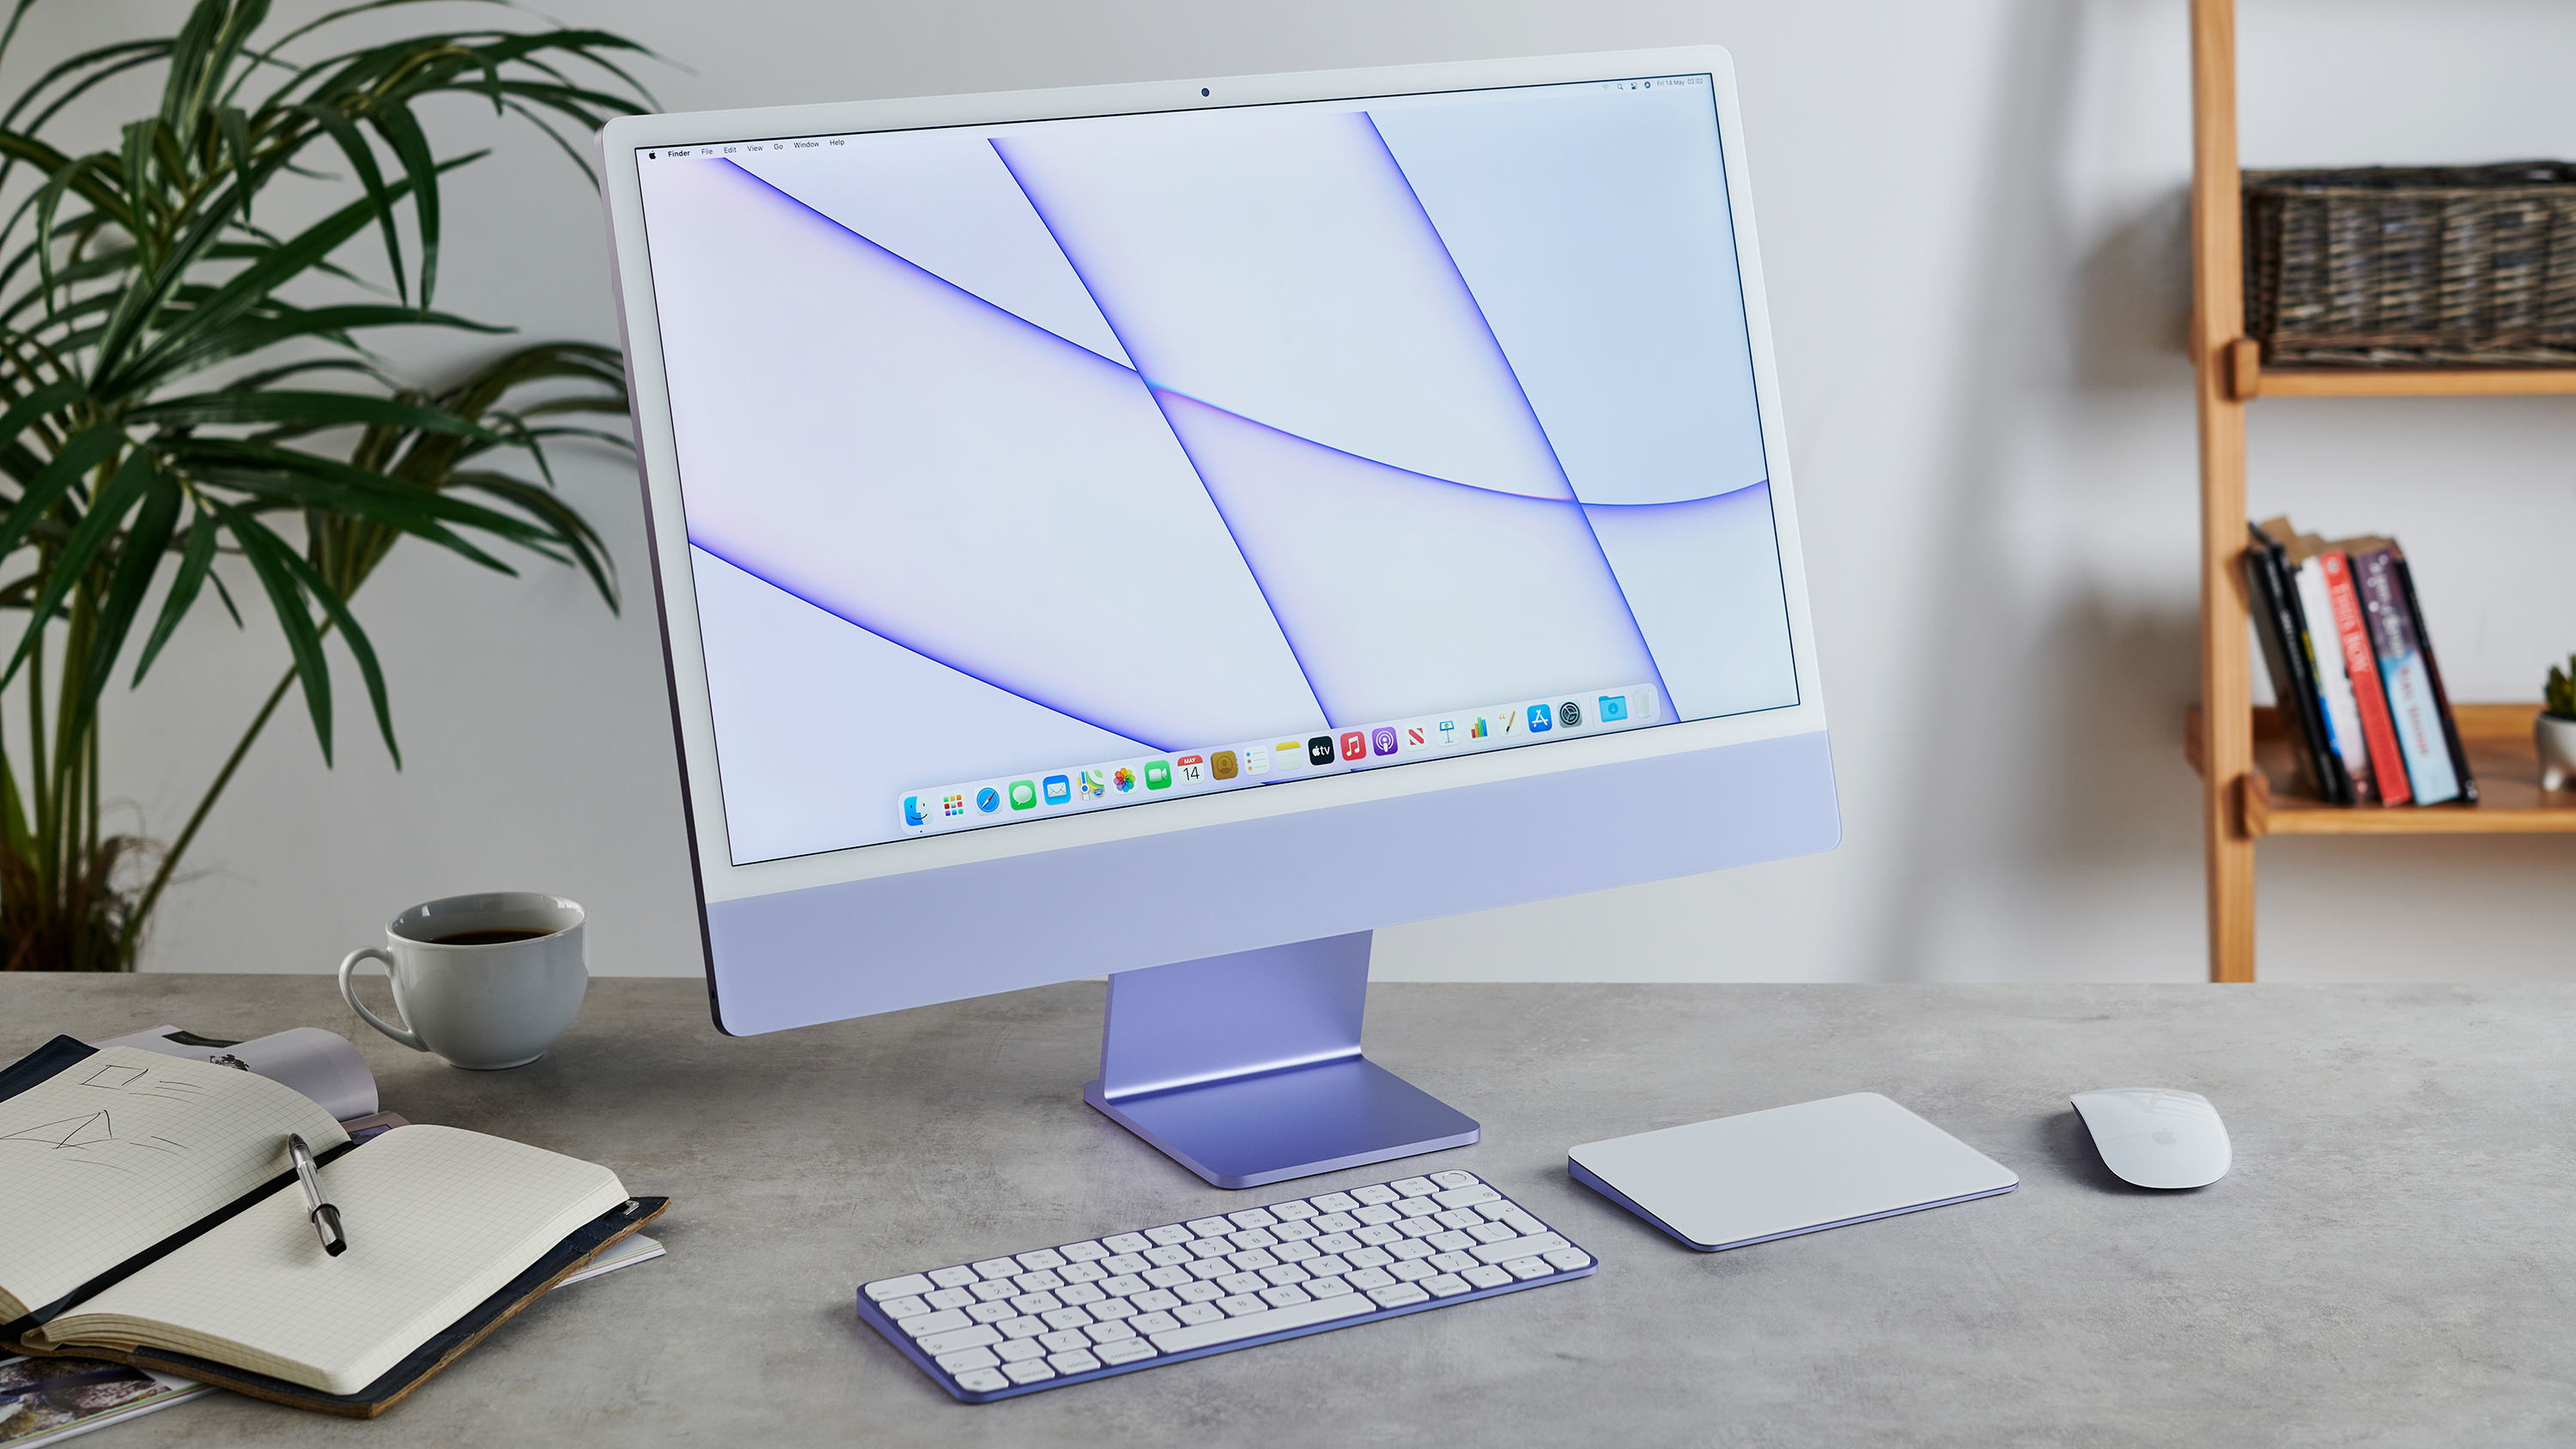 iMac (24-inch, 2021) on a desk